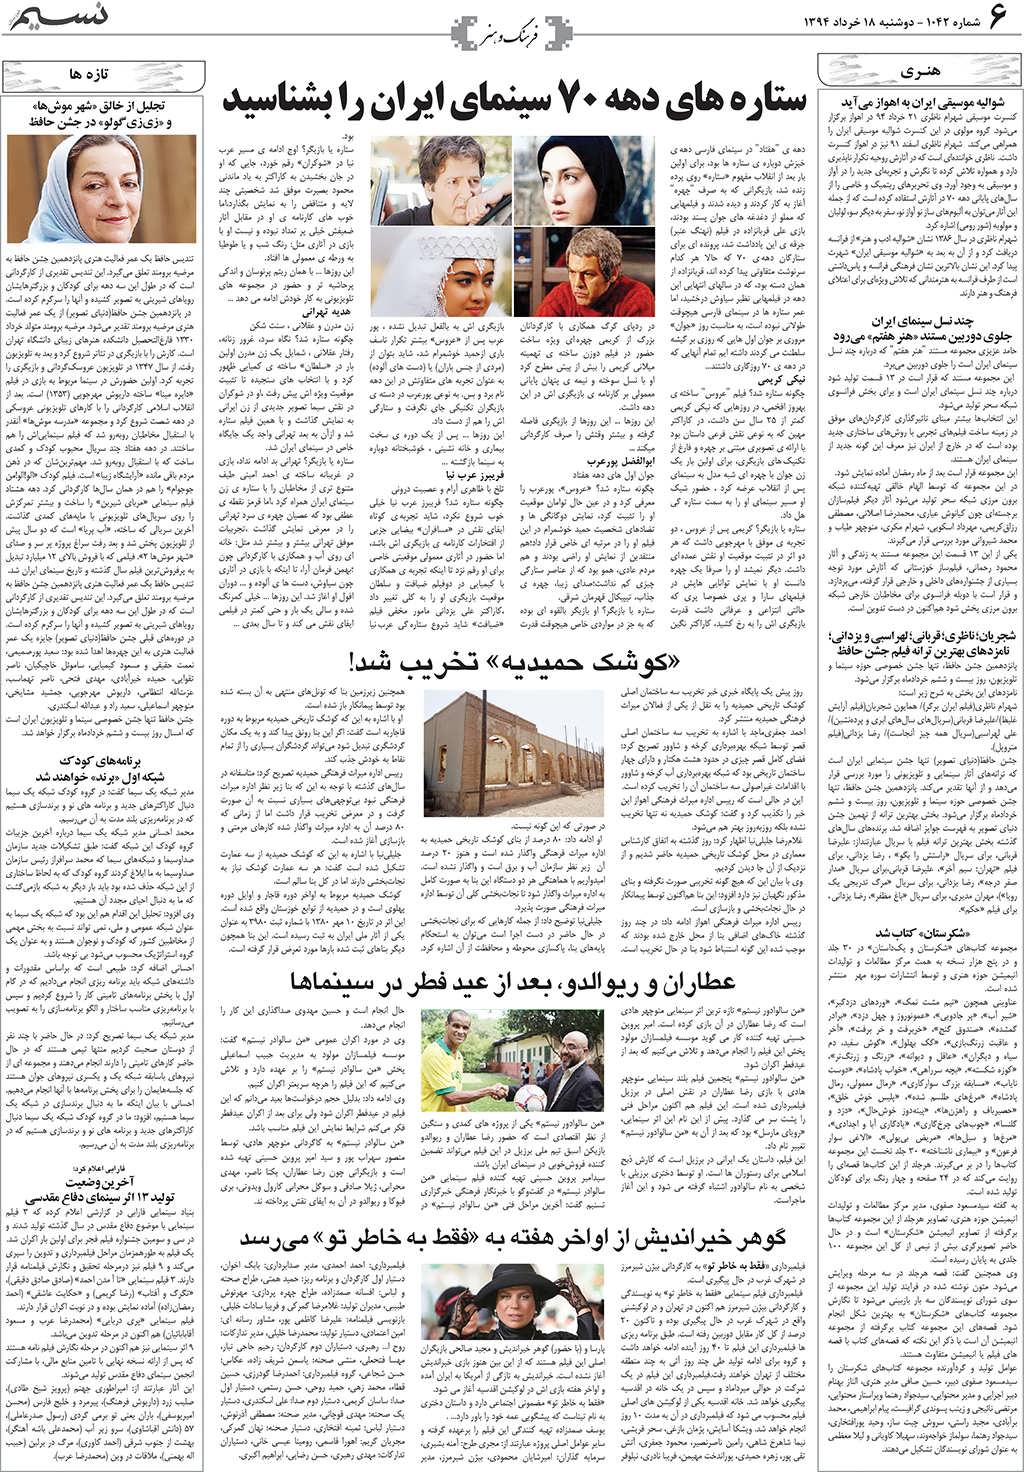 صفحه فرهنگ و هنر روزنامه نسیم شماره 1042